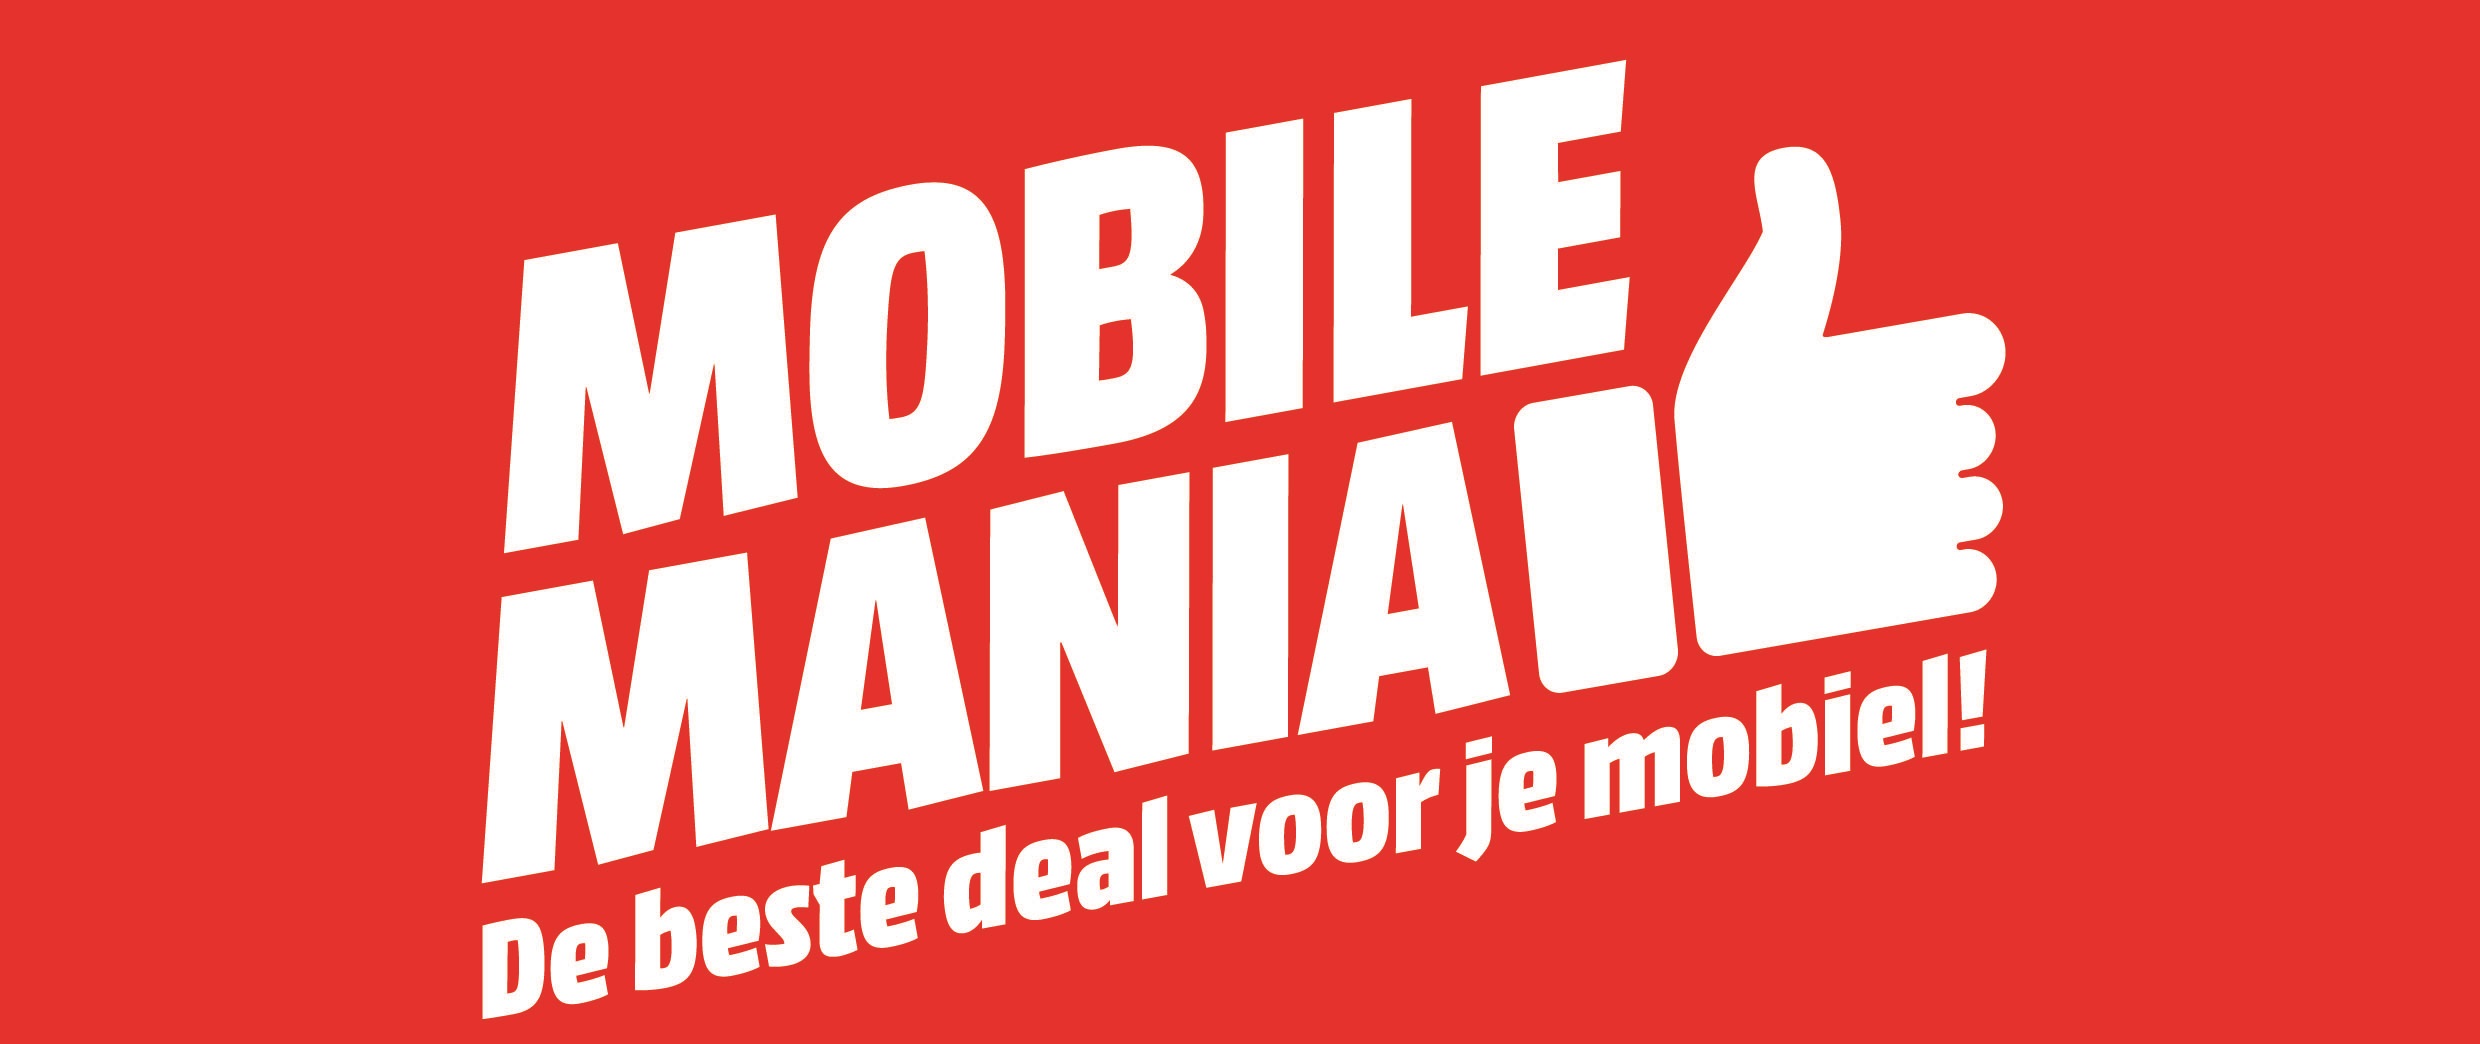 Mobile Mania bij MediaMarkt Hoorn!